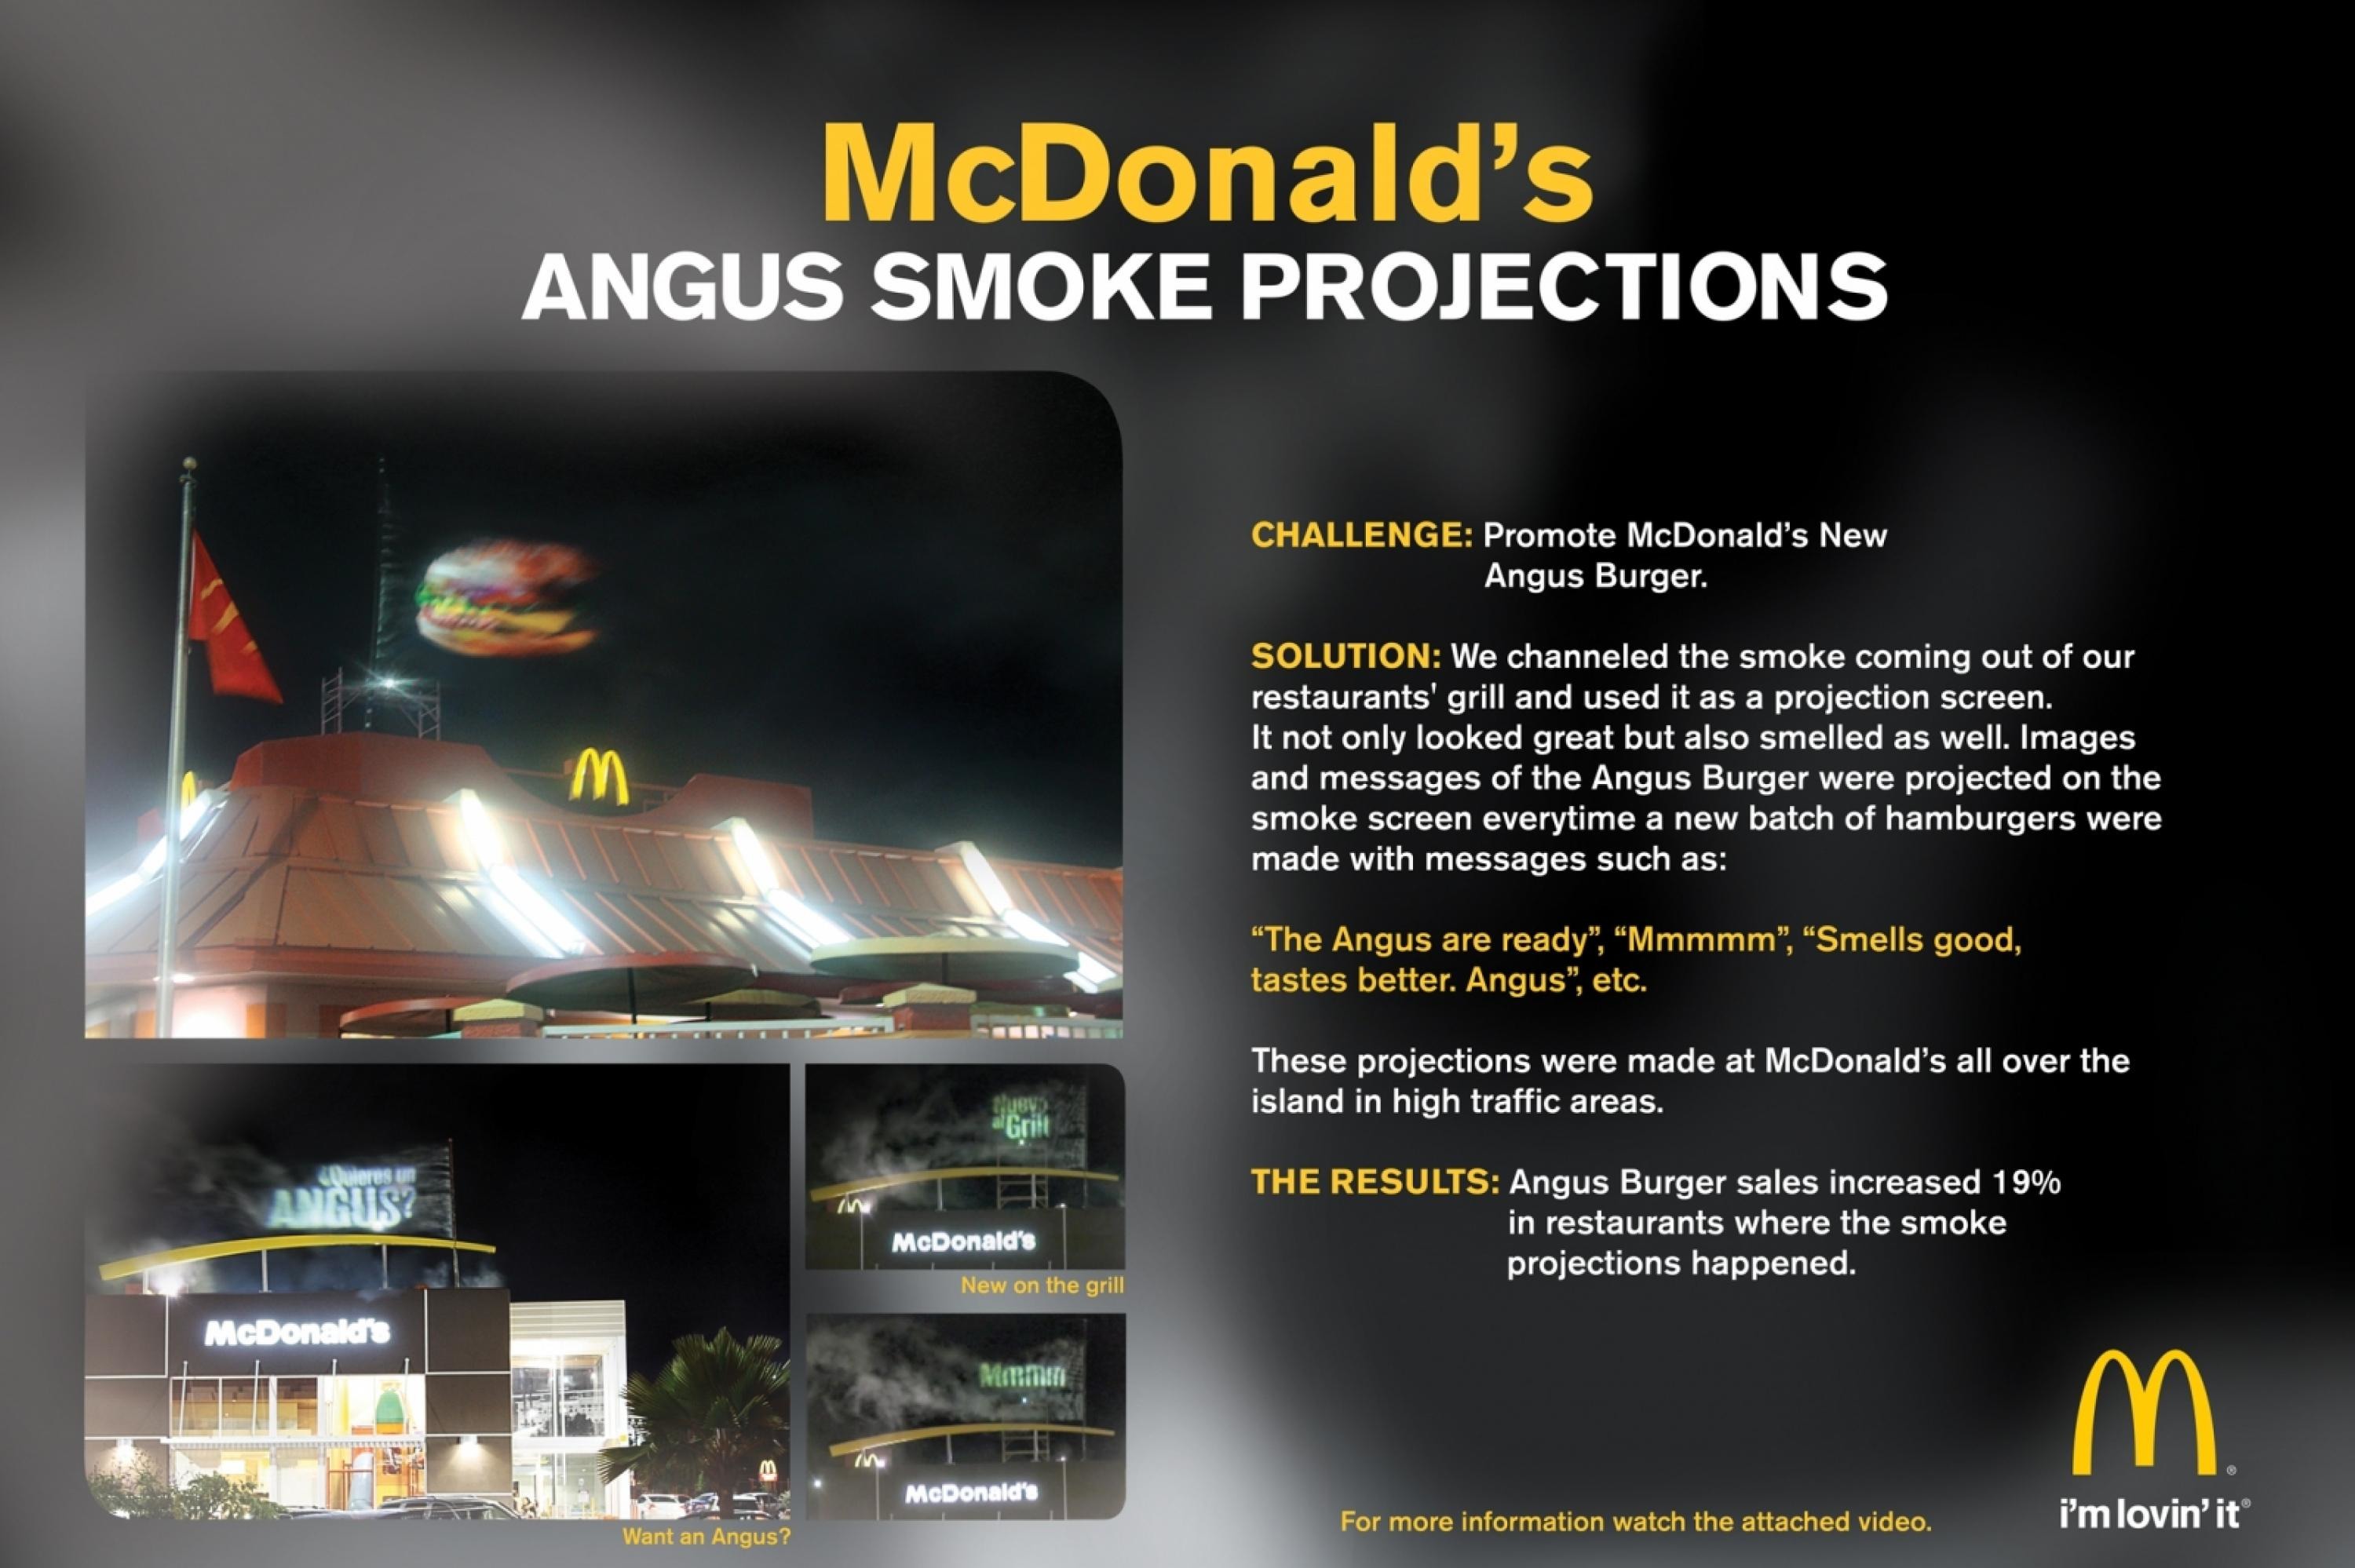 ANGUS SMOKE PROJECTION